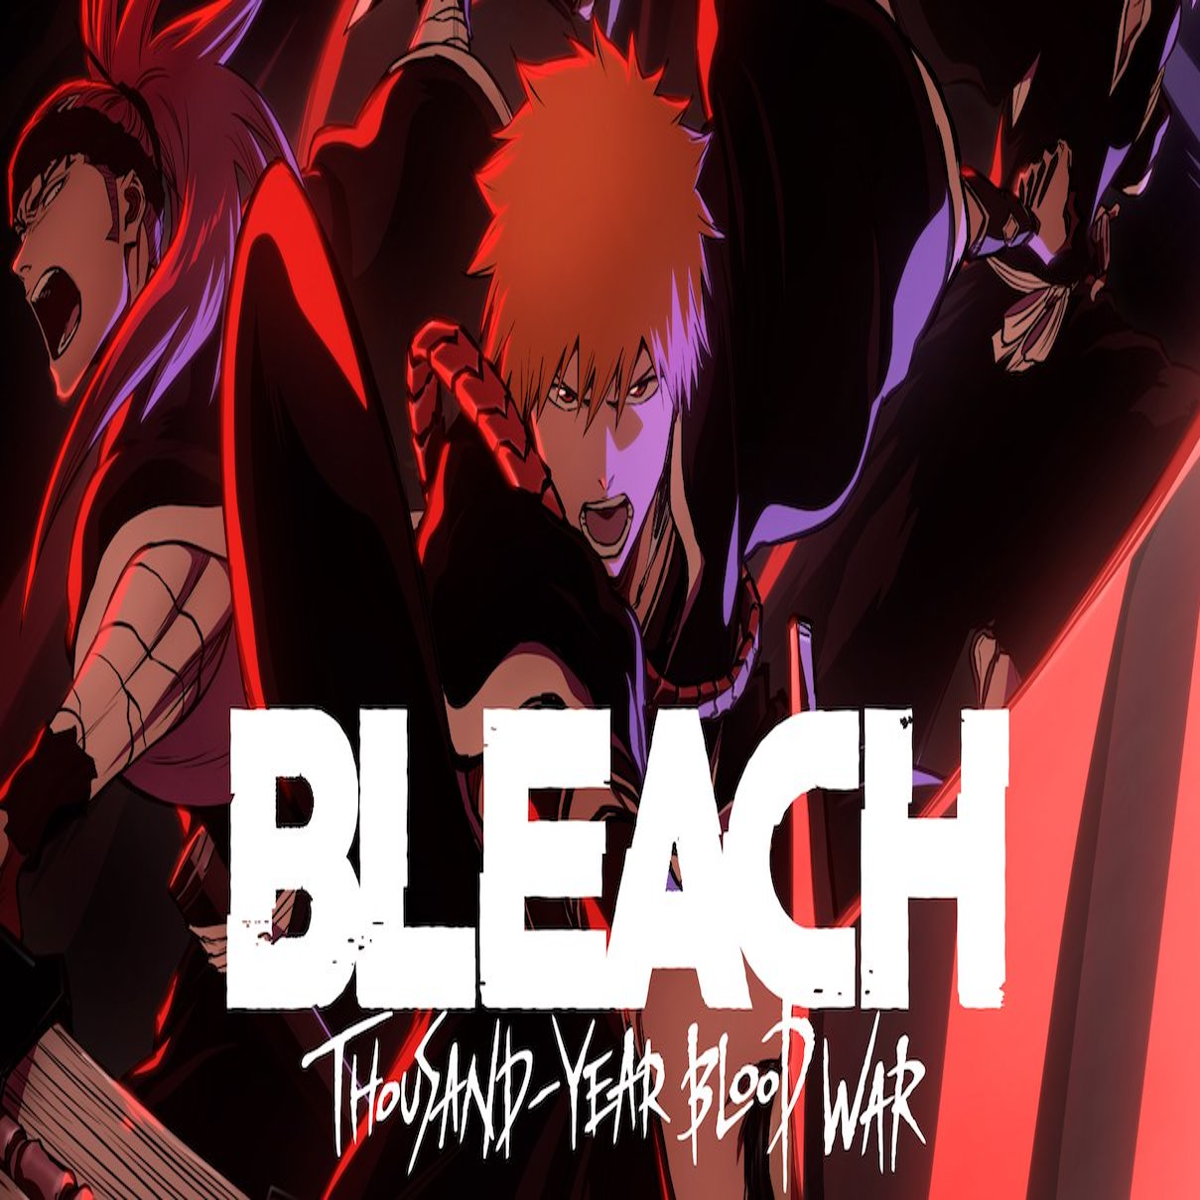 Bleach: Thousand-Year Blood War TV Anime Starts October 10 - Crunchyroll  News